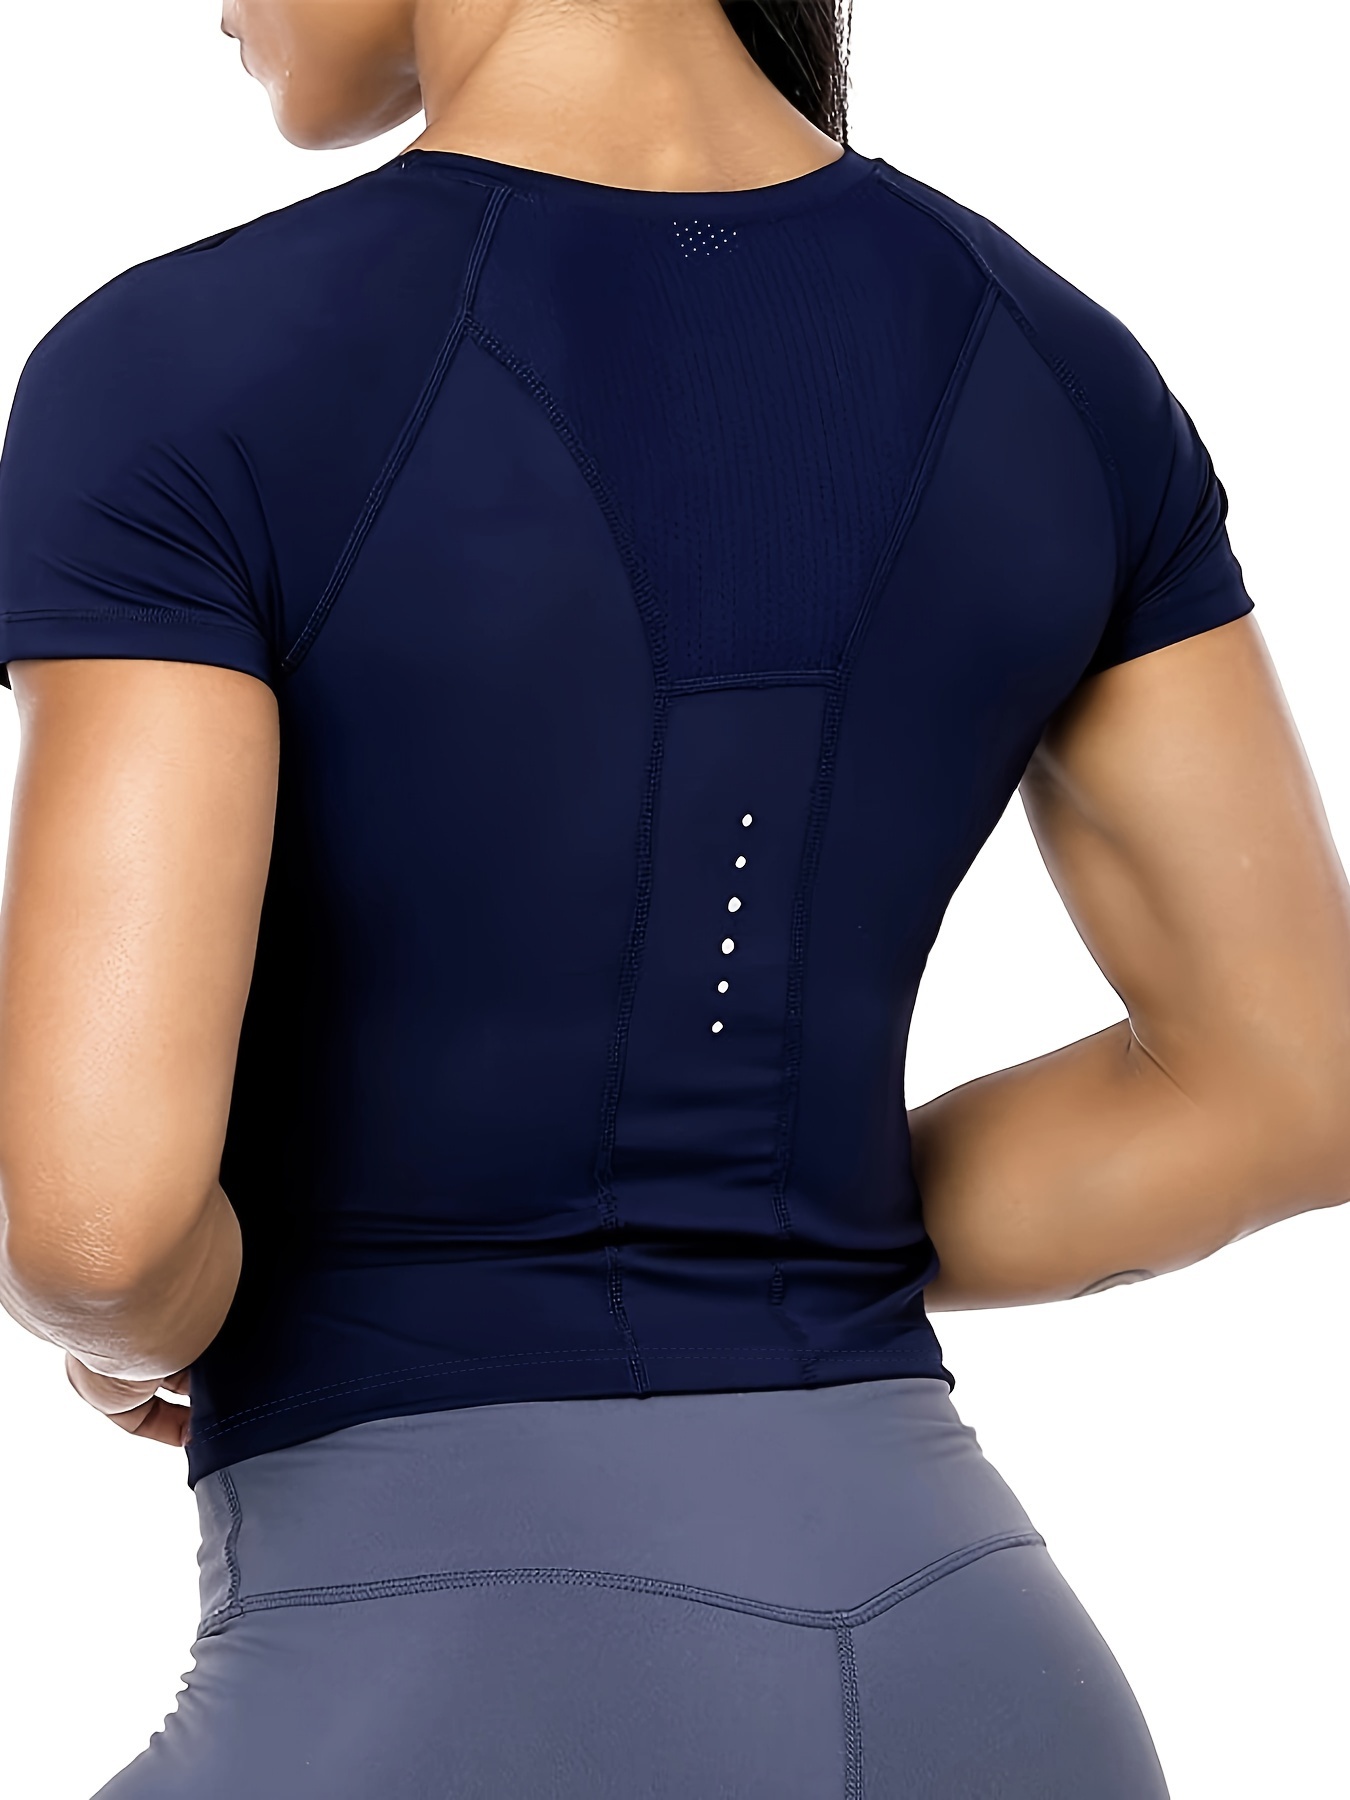 ZHENWEI Women's Workout Tops Short Sleeve Shirts Yoga Sports